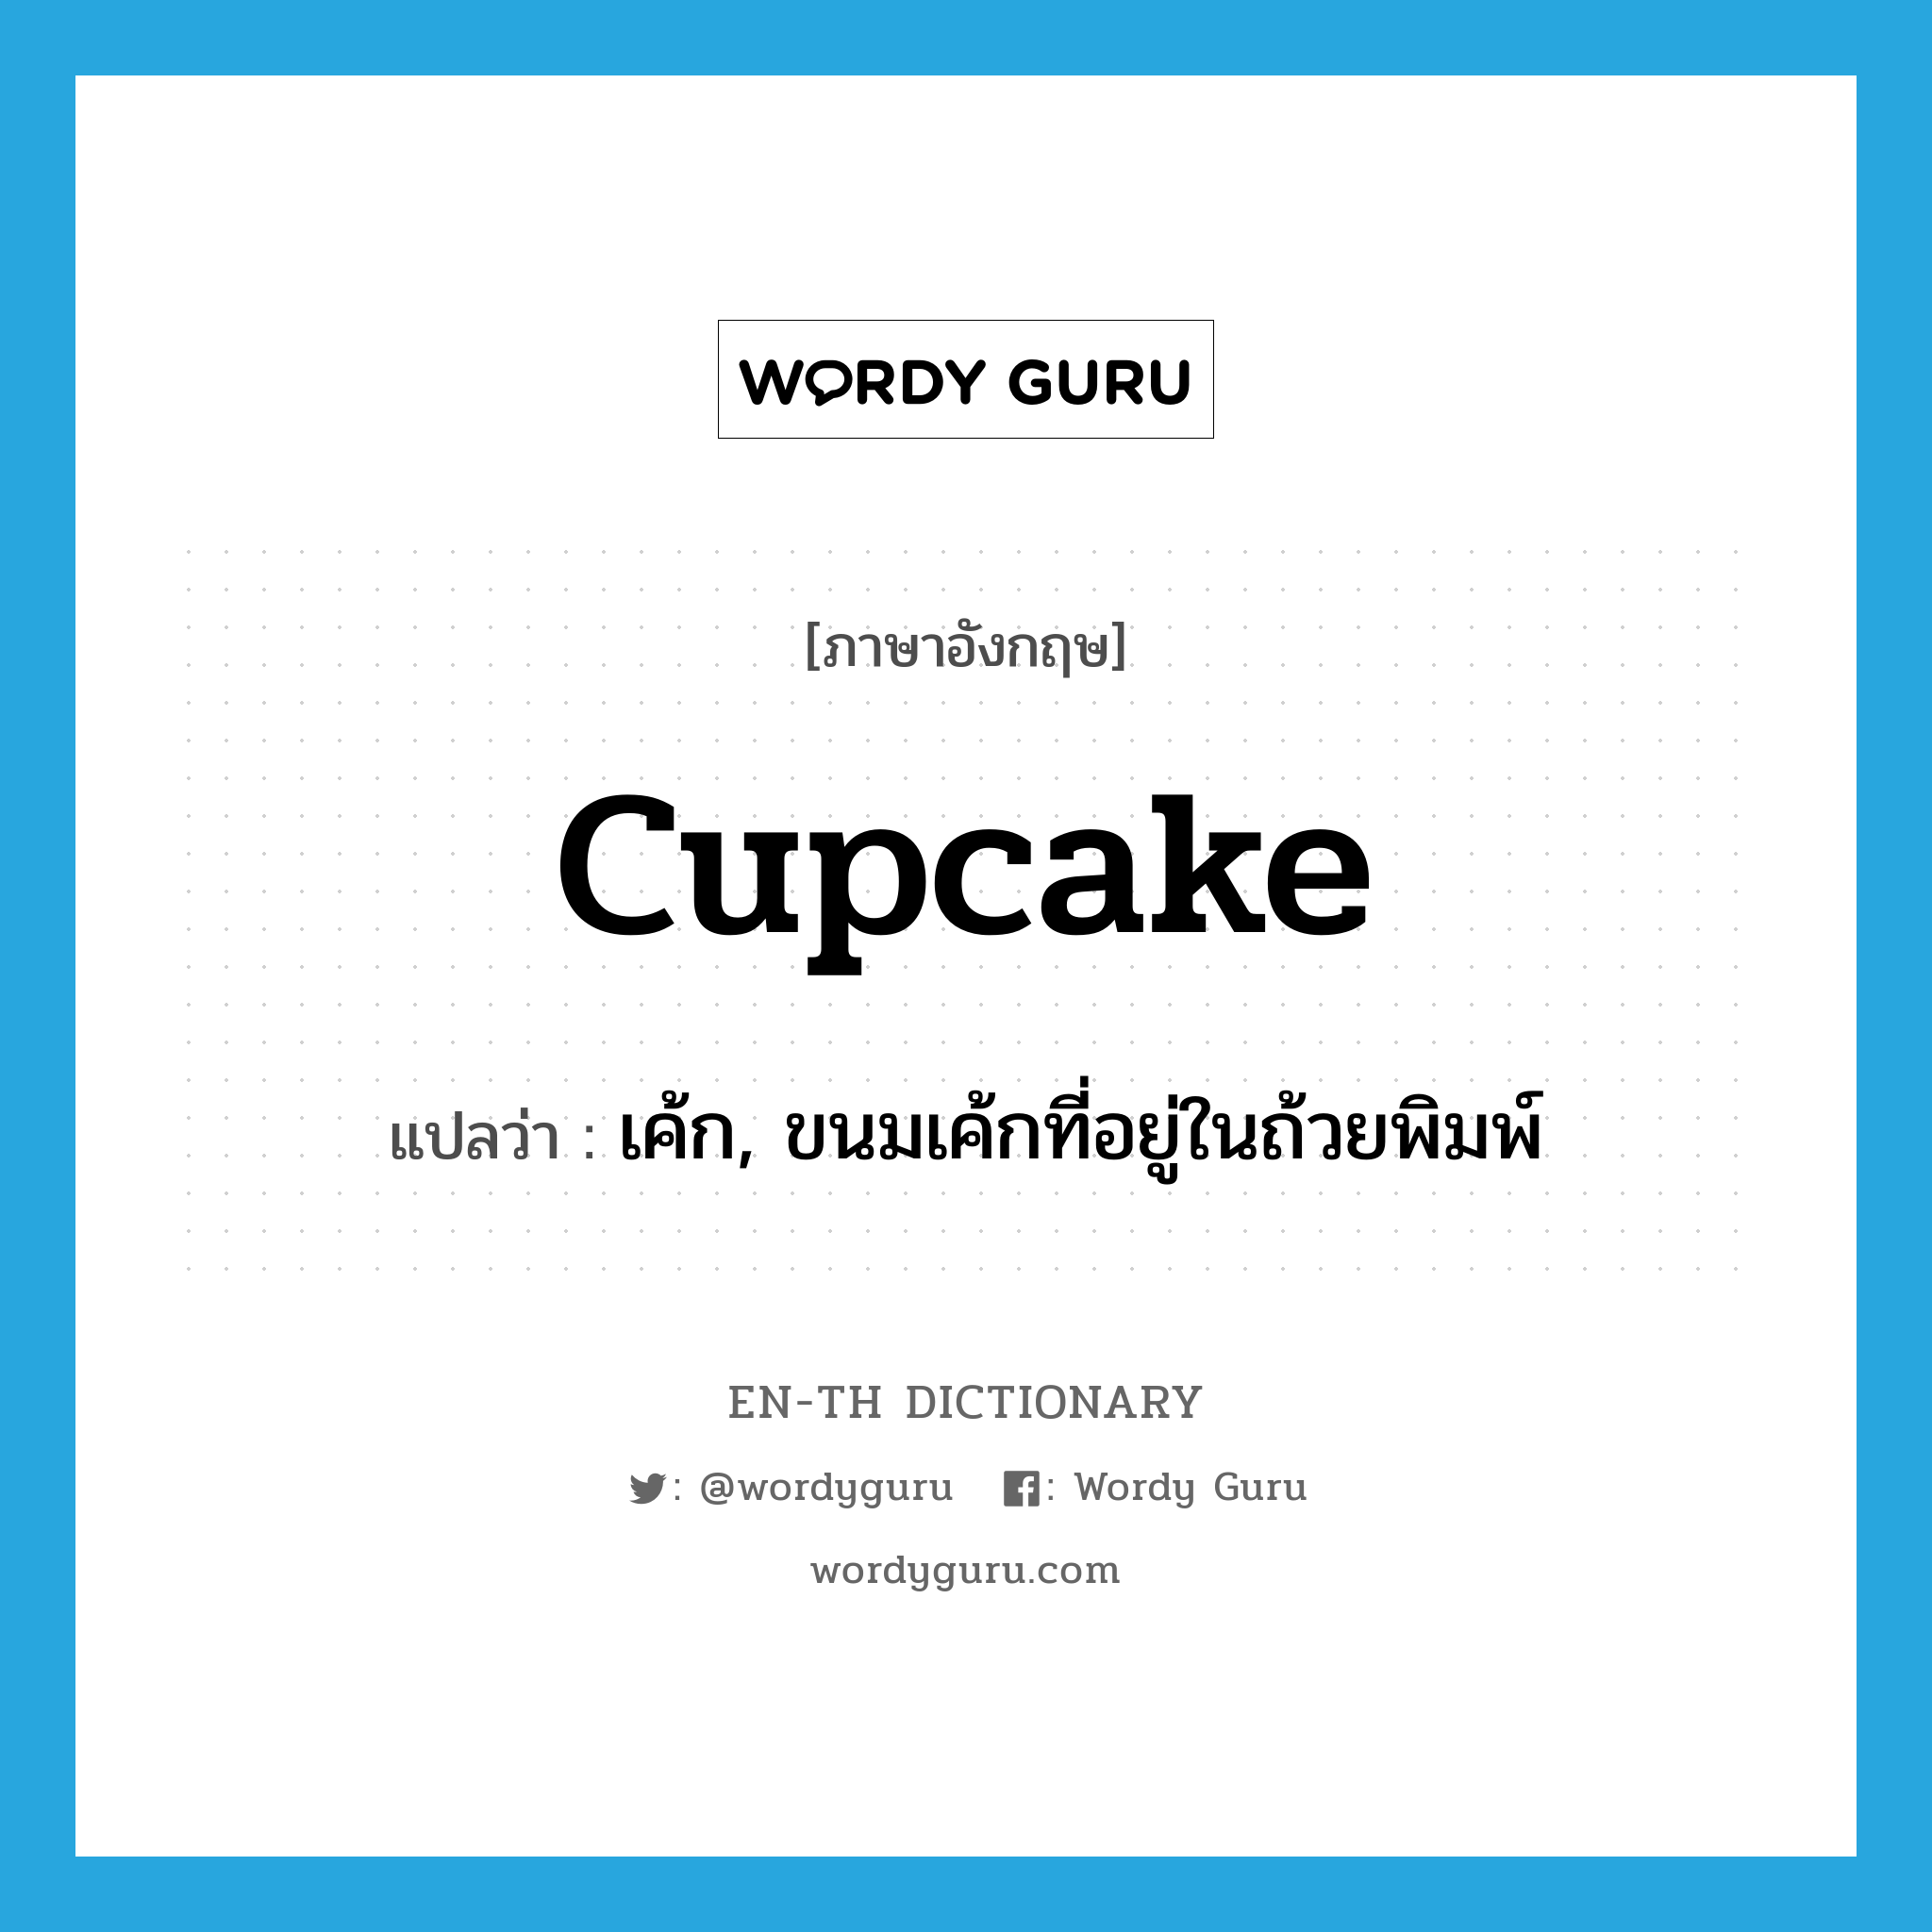 เค้ก, ขนมเค้กที่อยู่ในถ้วยพิมพ์ ภาษาอังกฤษ?, คำศัพท์ภาษาอังกฤษ เค้ก, ขนมเค้กที่อยู่ในถ้วยพิมพ์ แปลว่า cupcake ประเภท N หมวด N